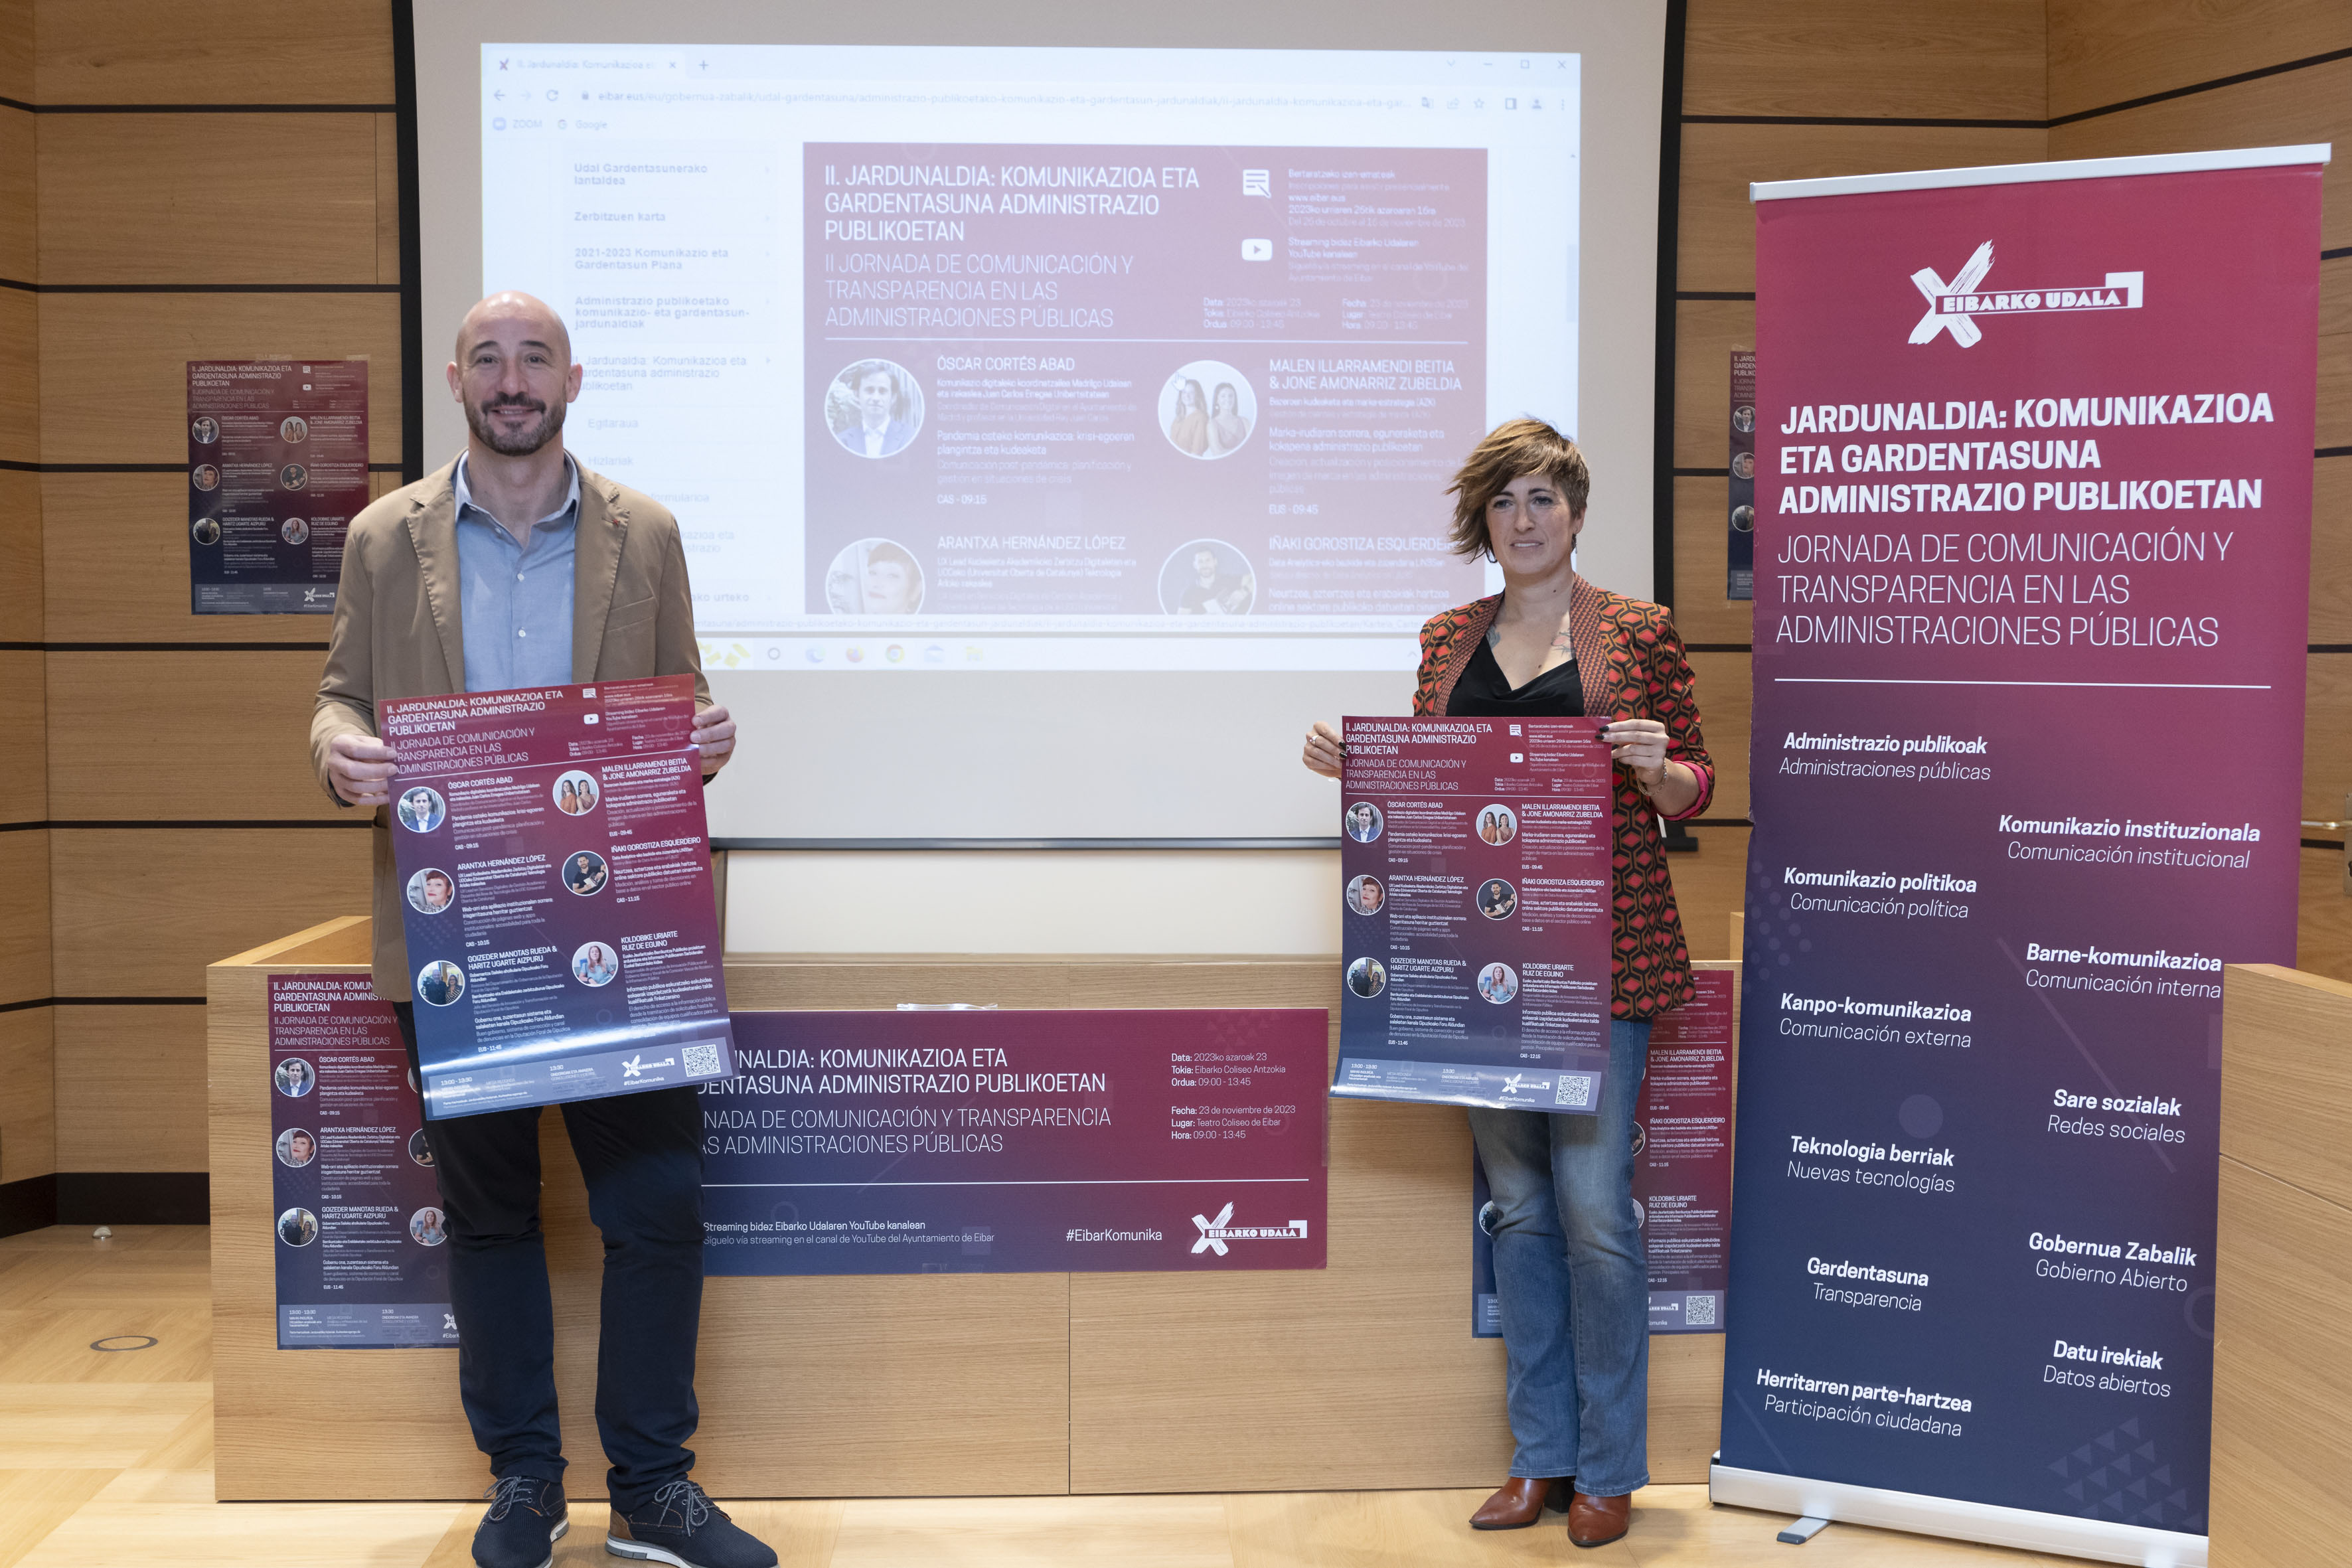 El Ayuntamiento de Eibar organiza por segunda vez una Jornada sobre Comunicación y Transparencia en las administraciones públicas para el próximo 23 de noviembre